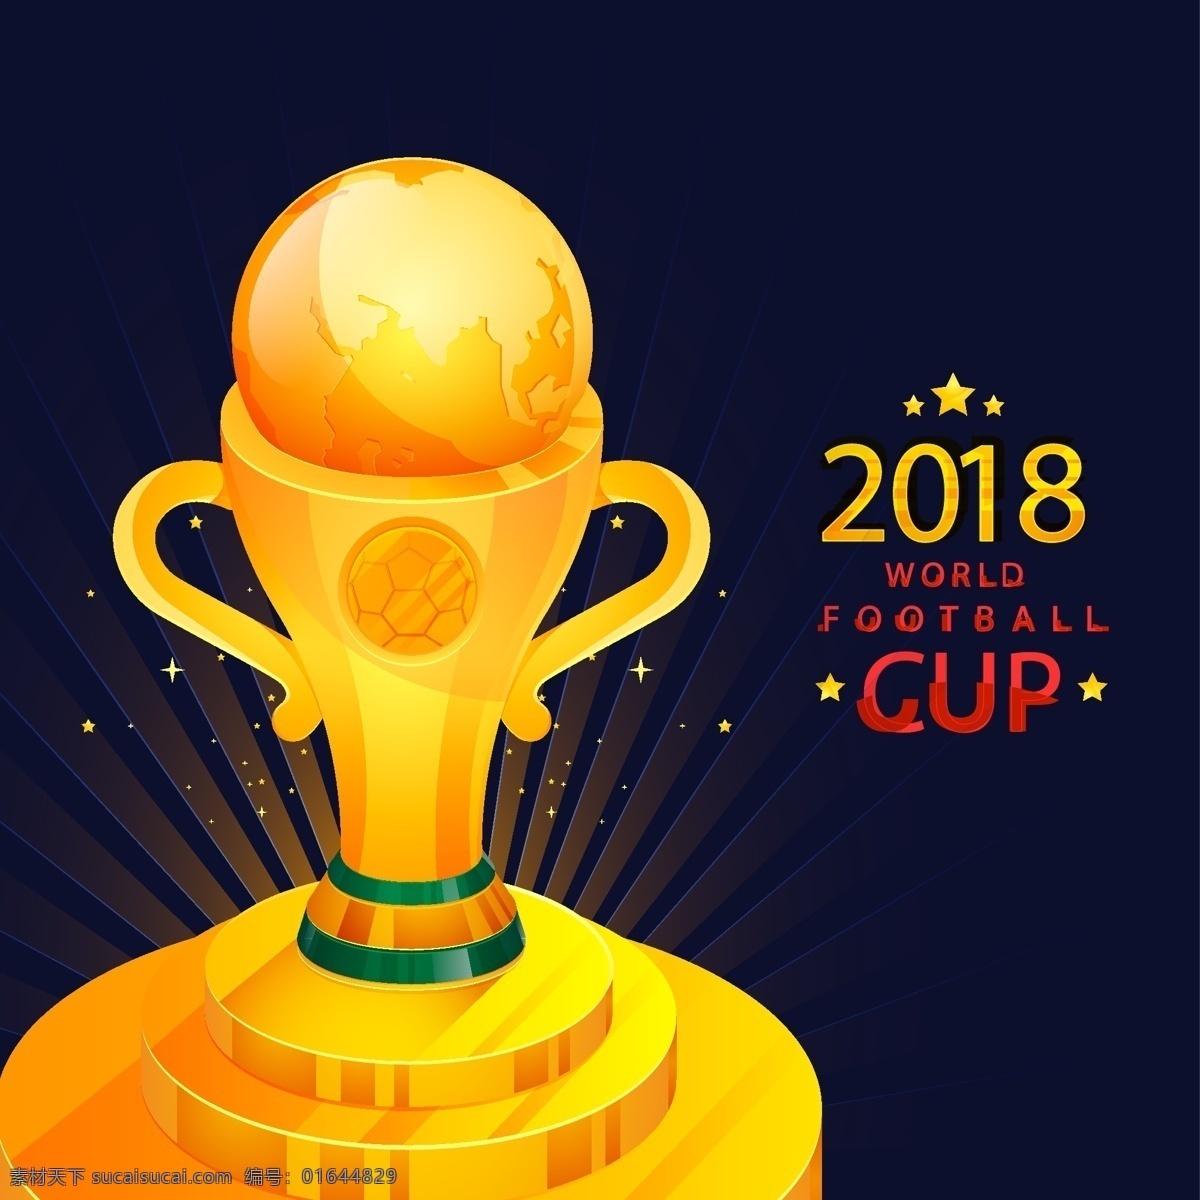 矢量 世界杯 金色 奖杯 矢量素材 足球 金色奖杯 俄罗斯 欧洲杯 卡通 比赛 体育 竞赛 2018 扁平